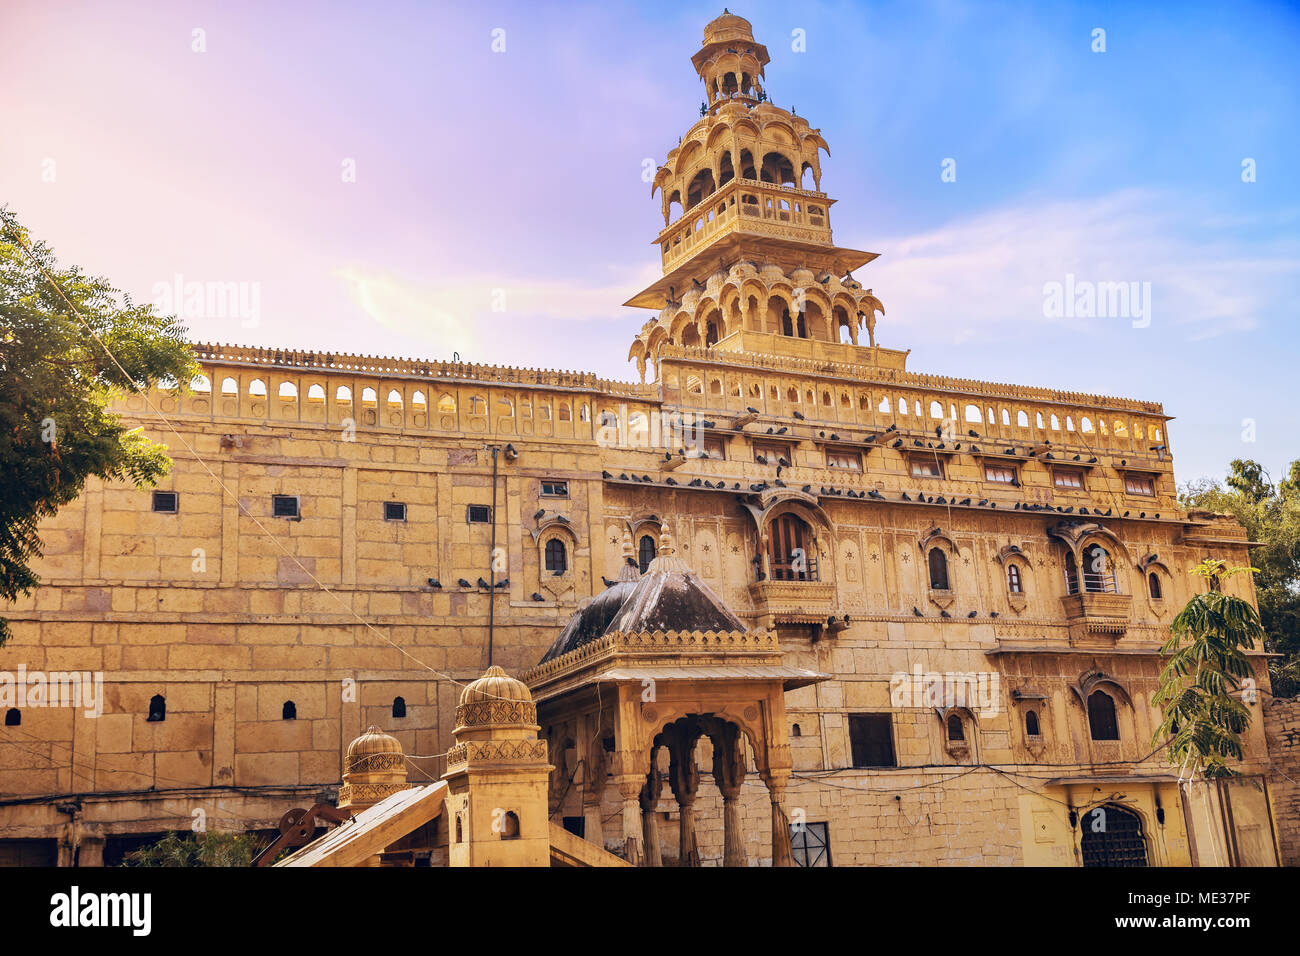 Mandir Palace Jaisalmer Rajasthan India - Royal Heritage esterno dell'edificio con dettagli architettonici e la vista della torre Tazia. Foto Stock